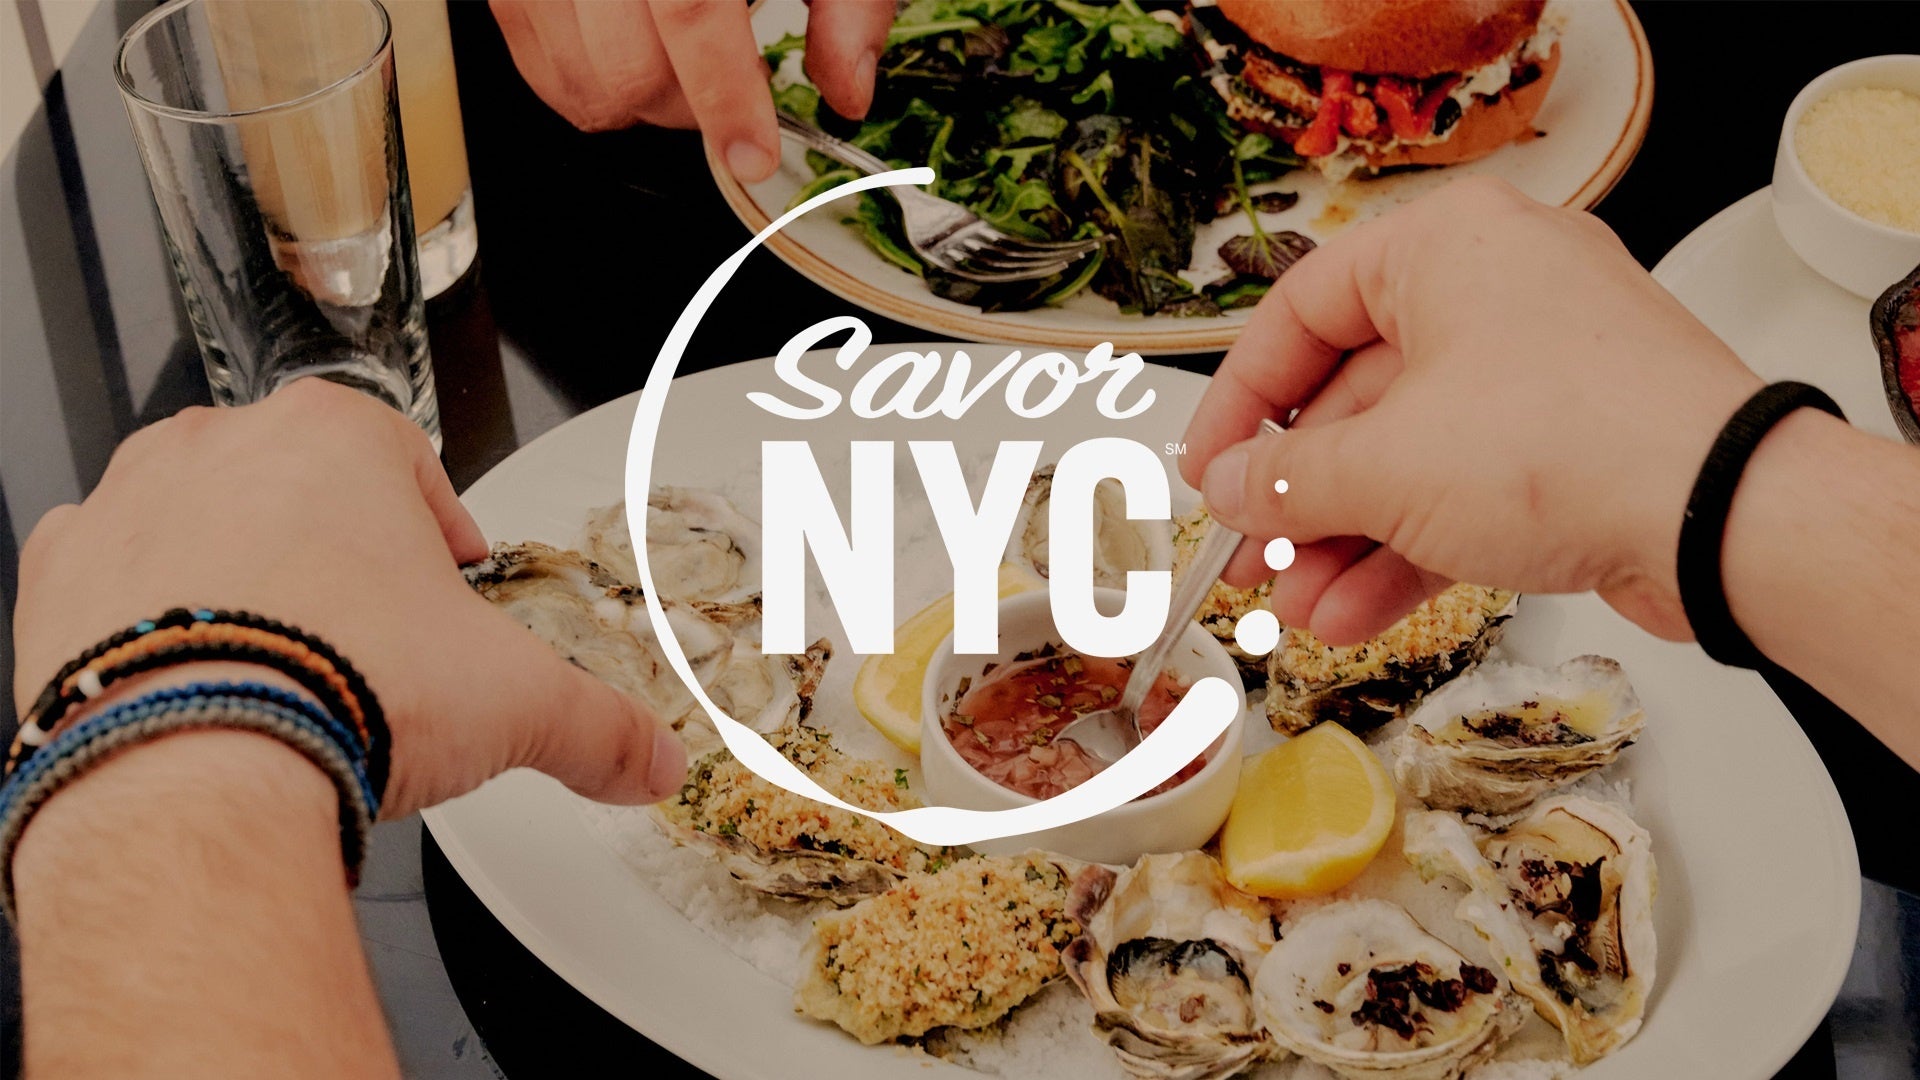 ニューヨーク市観光局が新たに展開する食のプログラム「Savor NYC」がスタートのサブ画像1